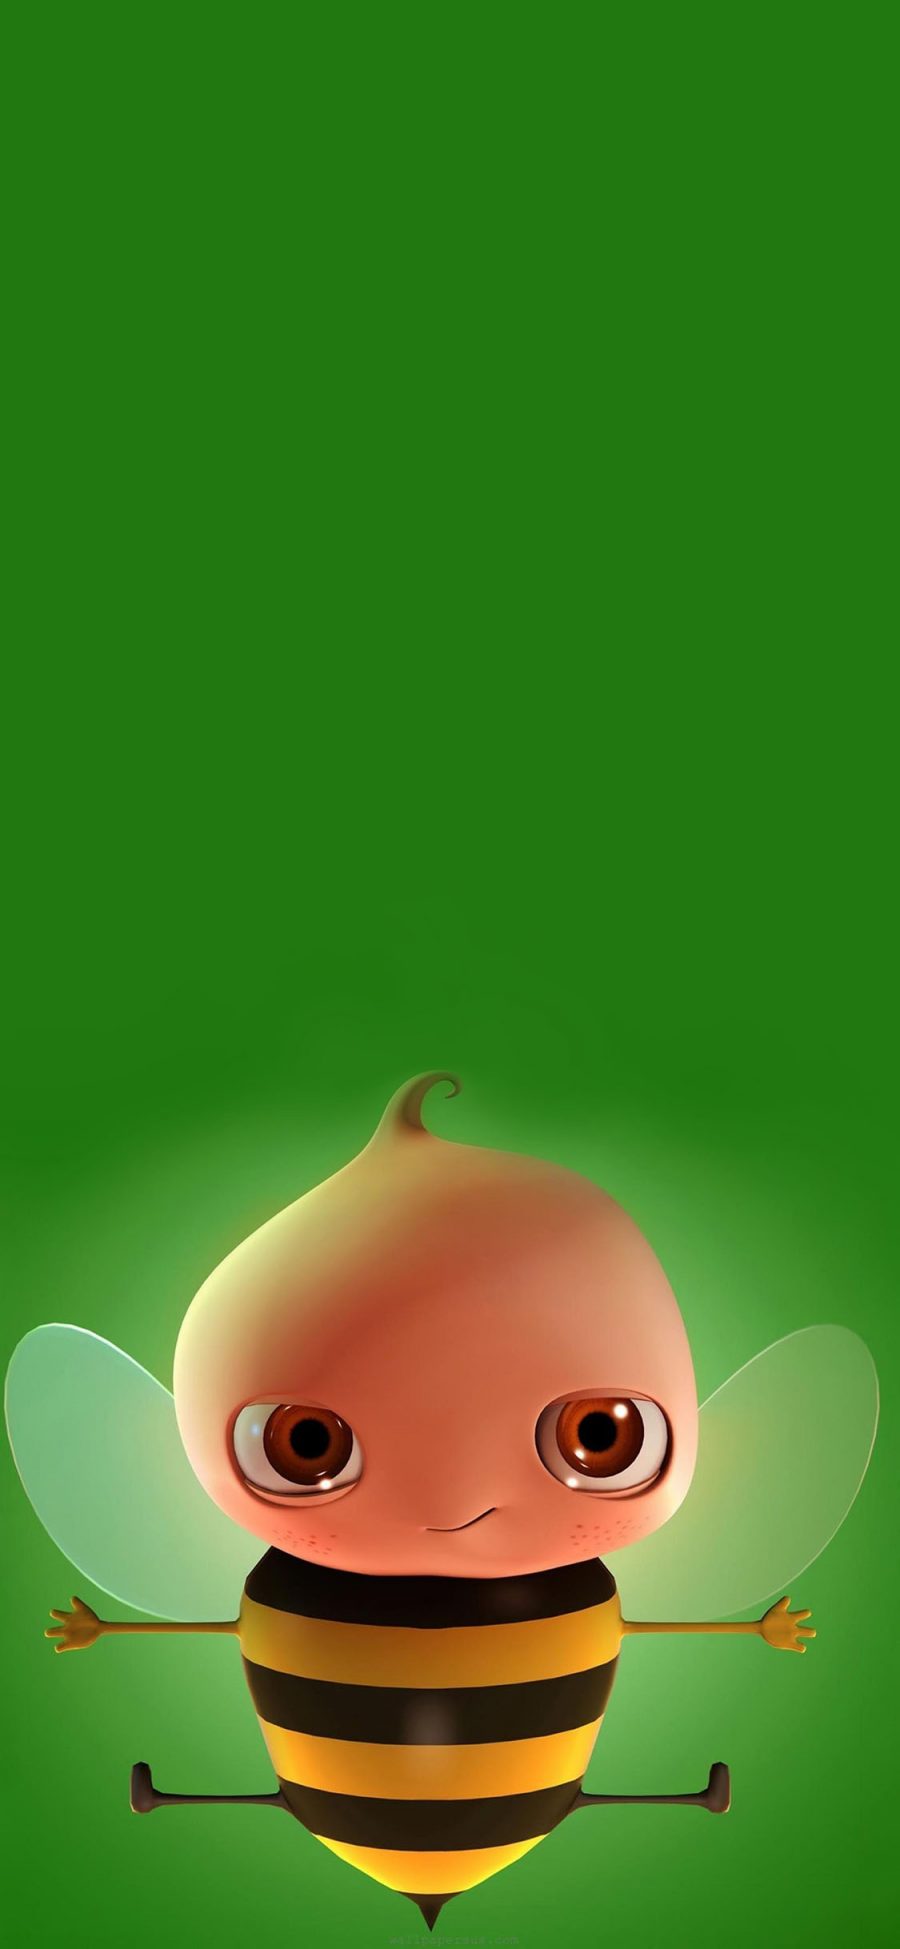 [2436×1125]绿色背景 小蜜蜂 卡通 苹果手机动漫壁纸图片